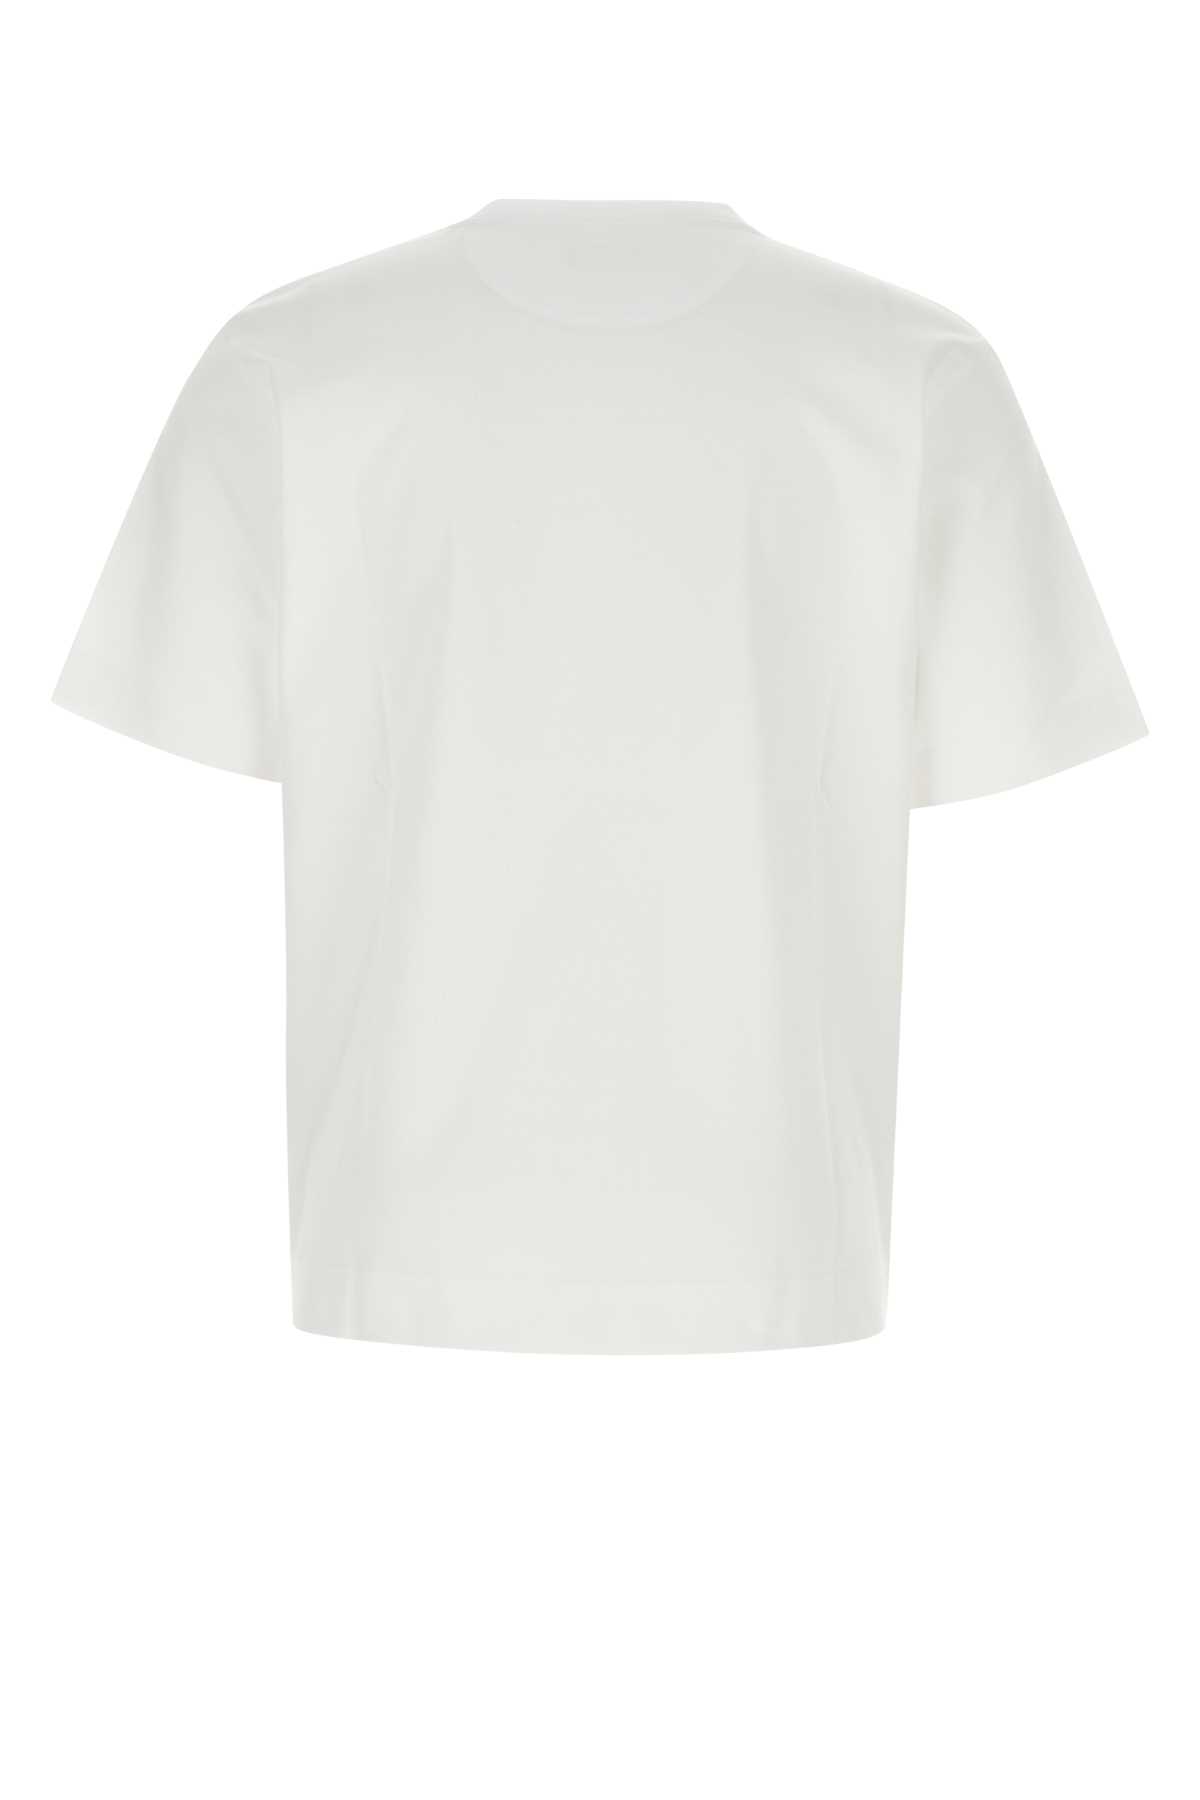 Fendi White Cotton T-shirt